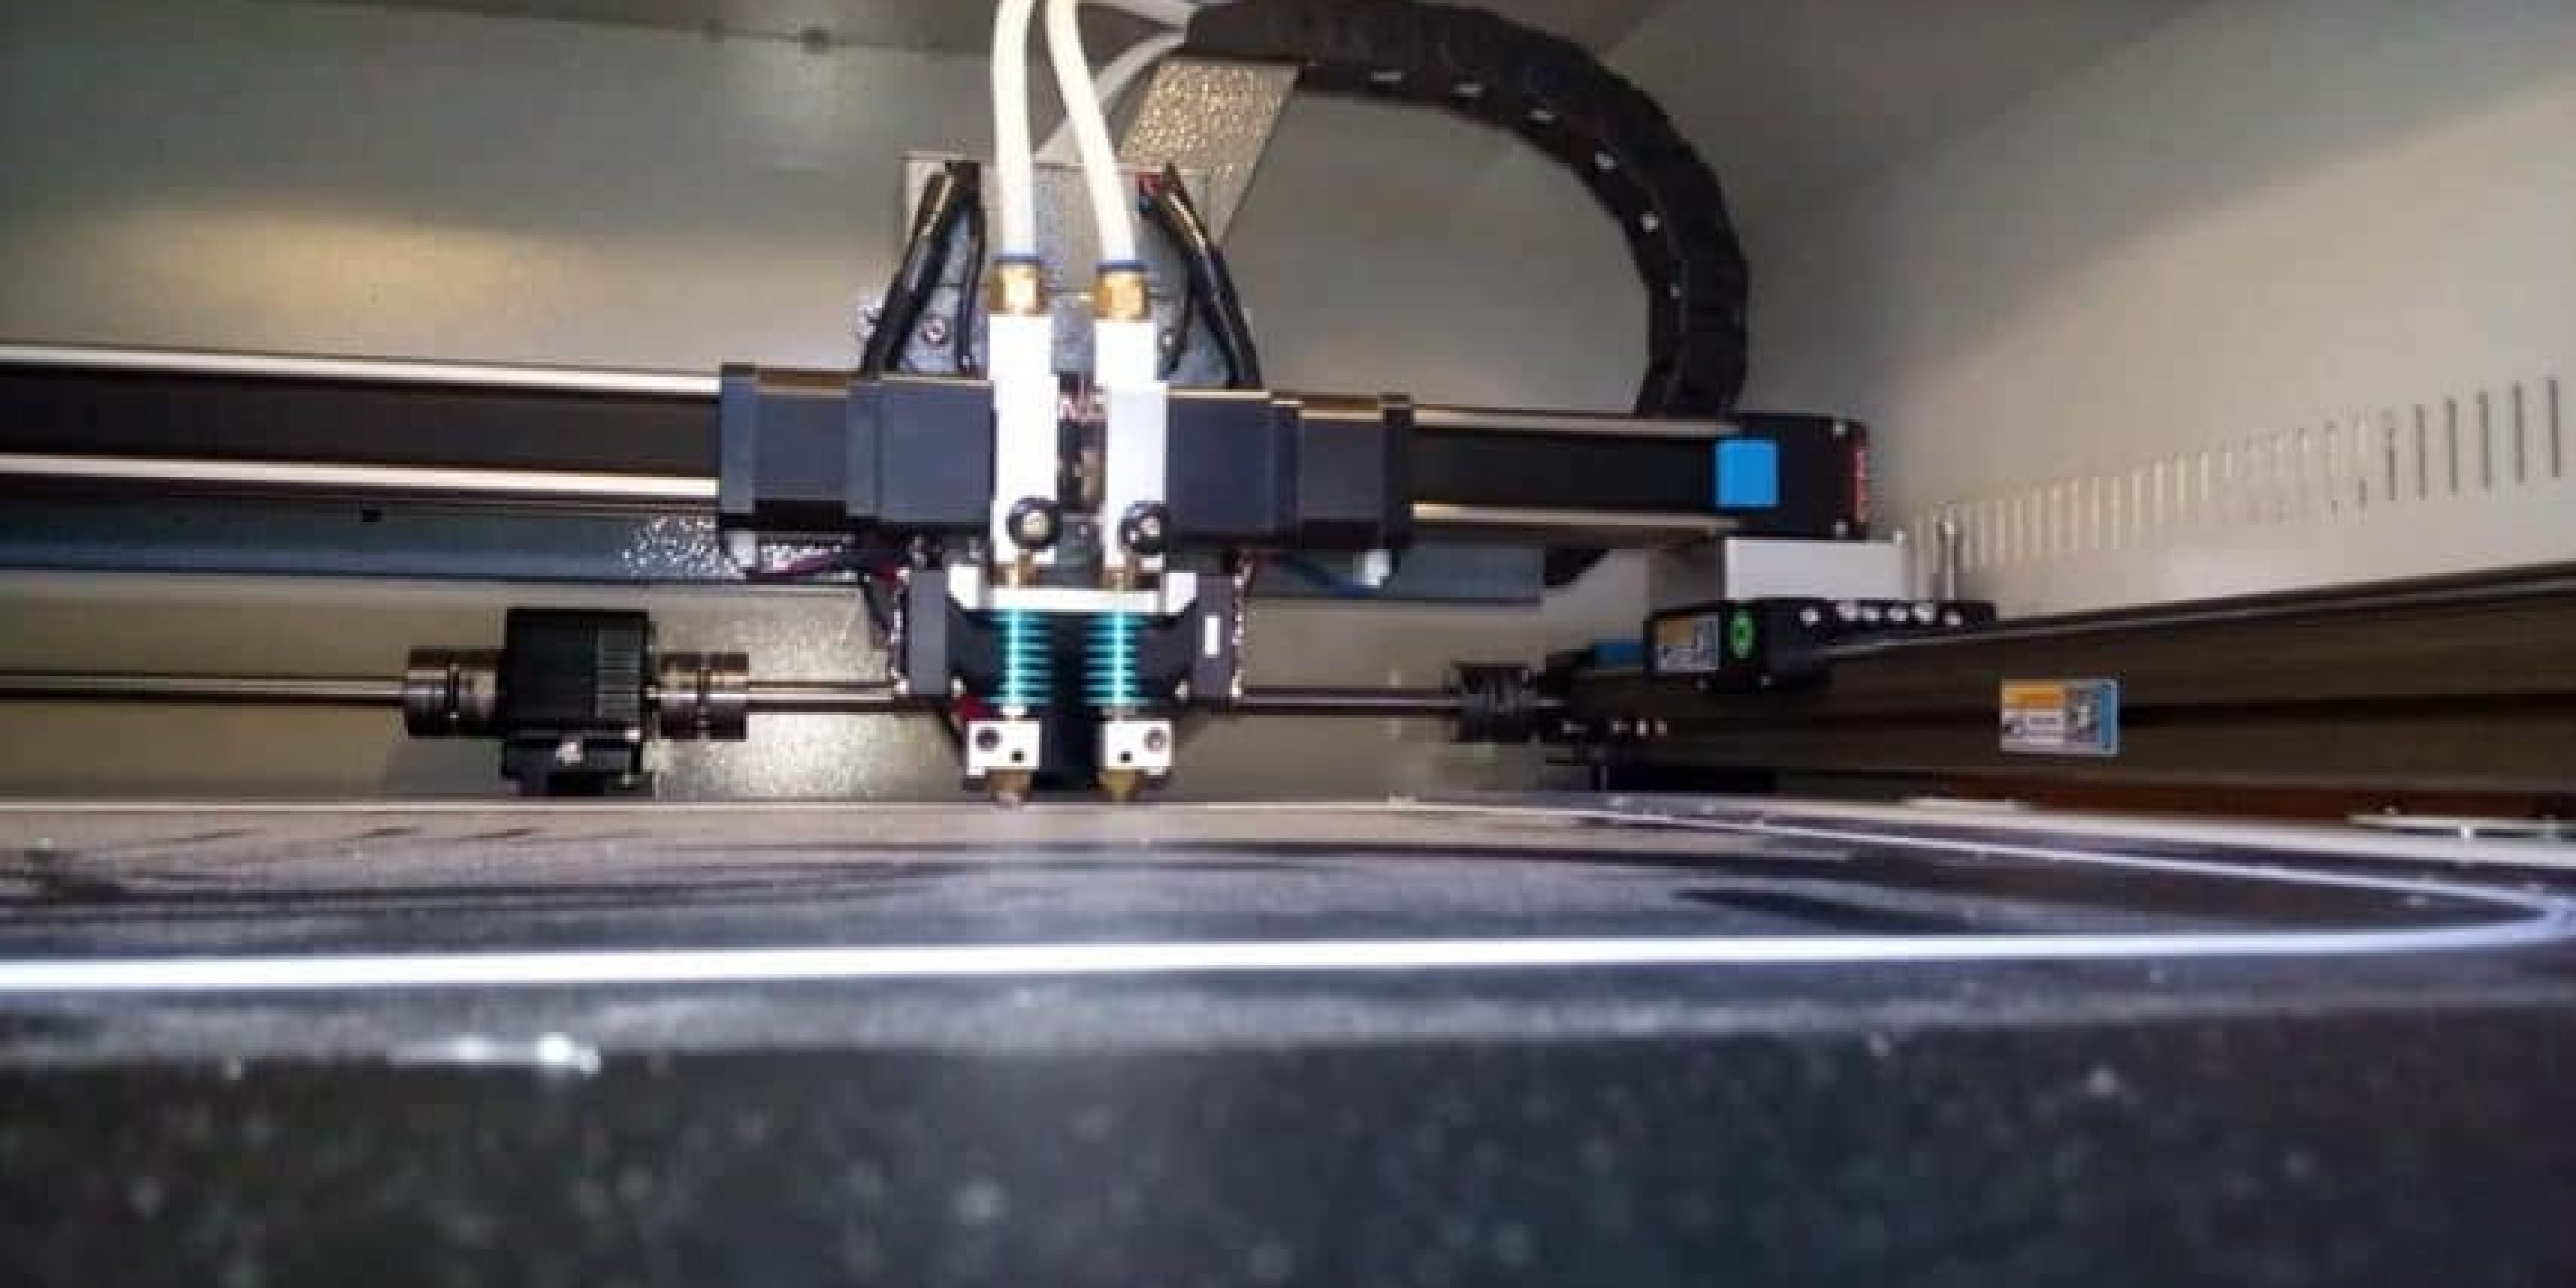 Logiciel pour imprimante 3D